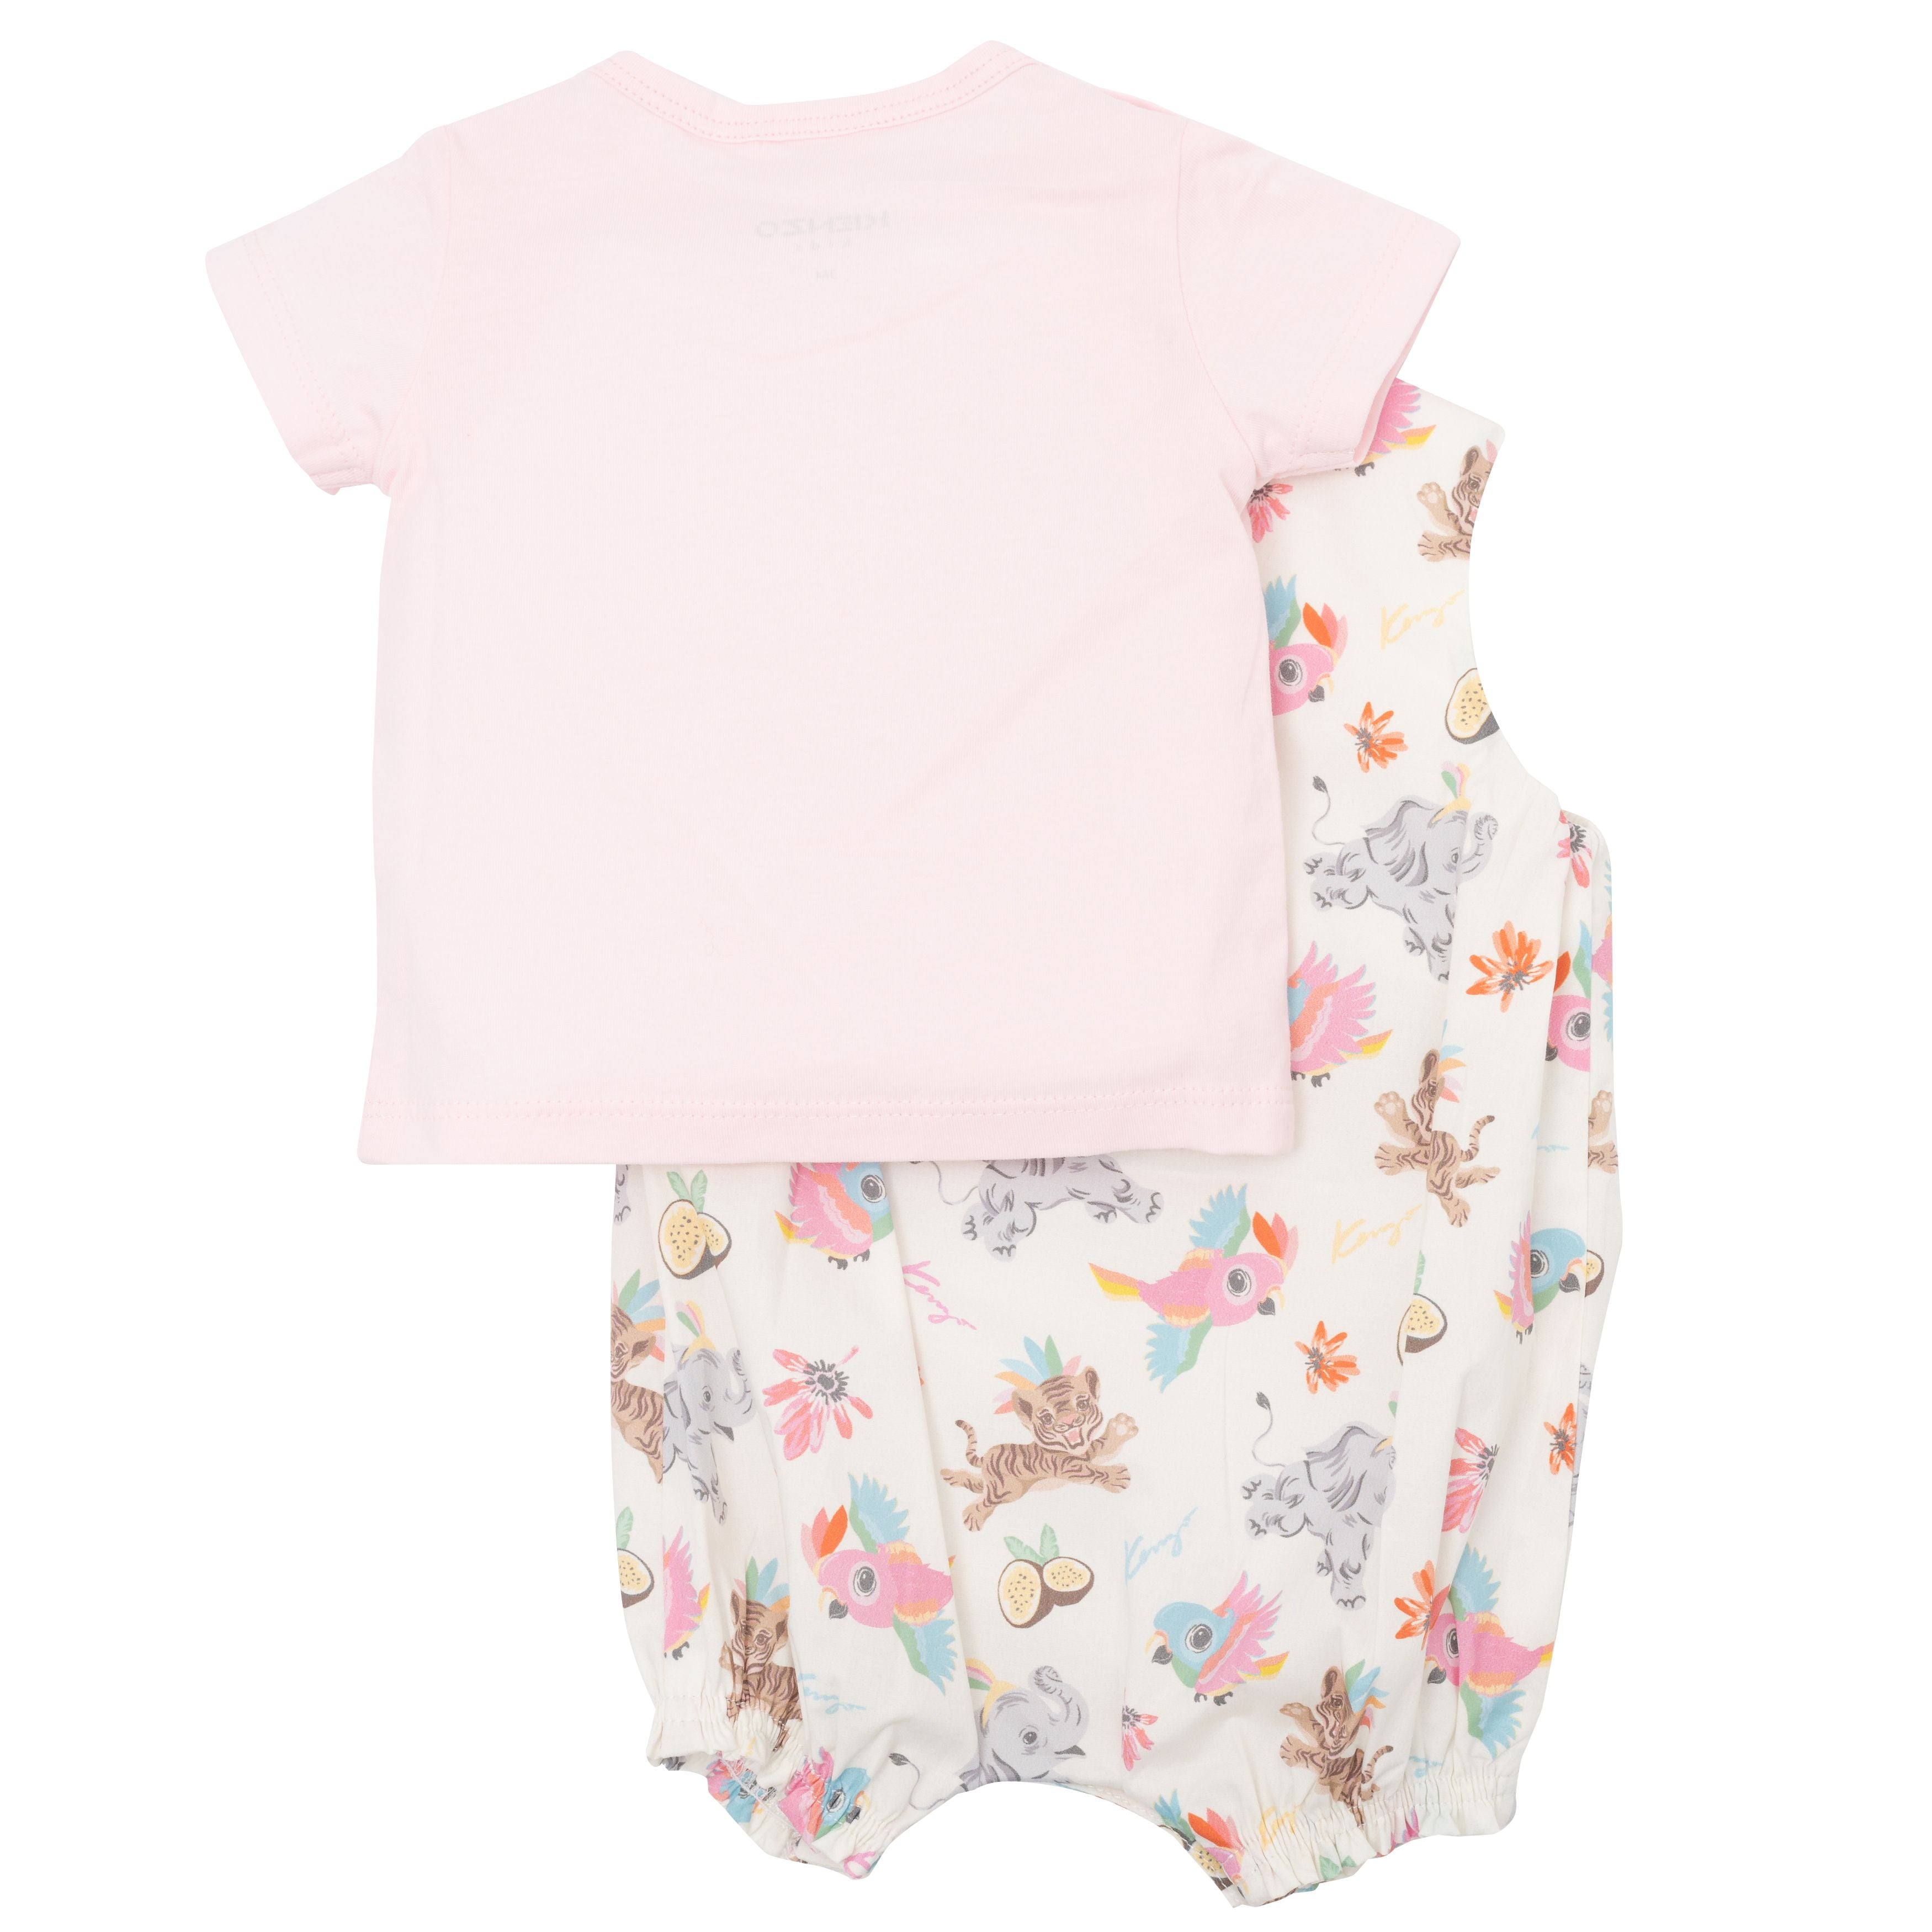 Baby Boys & Girls Pink Cotton Babysuit Set